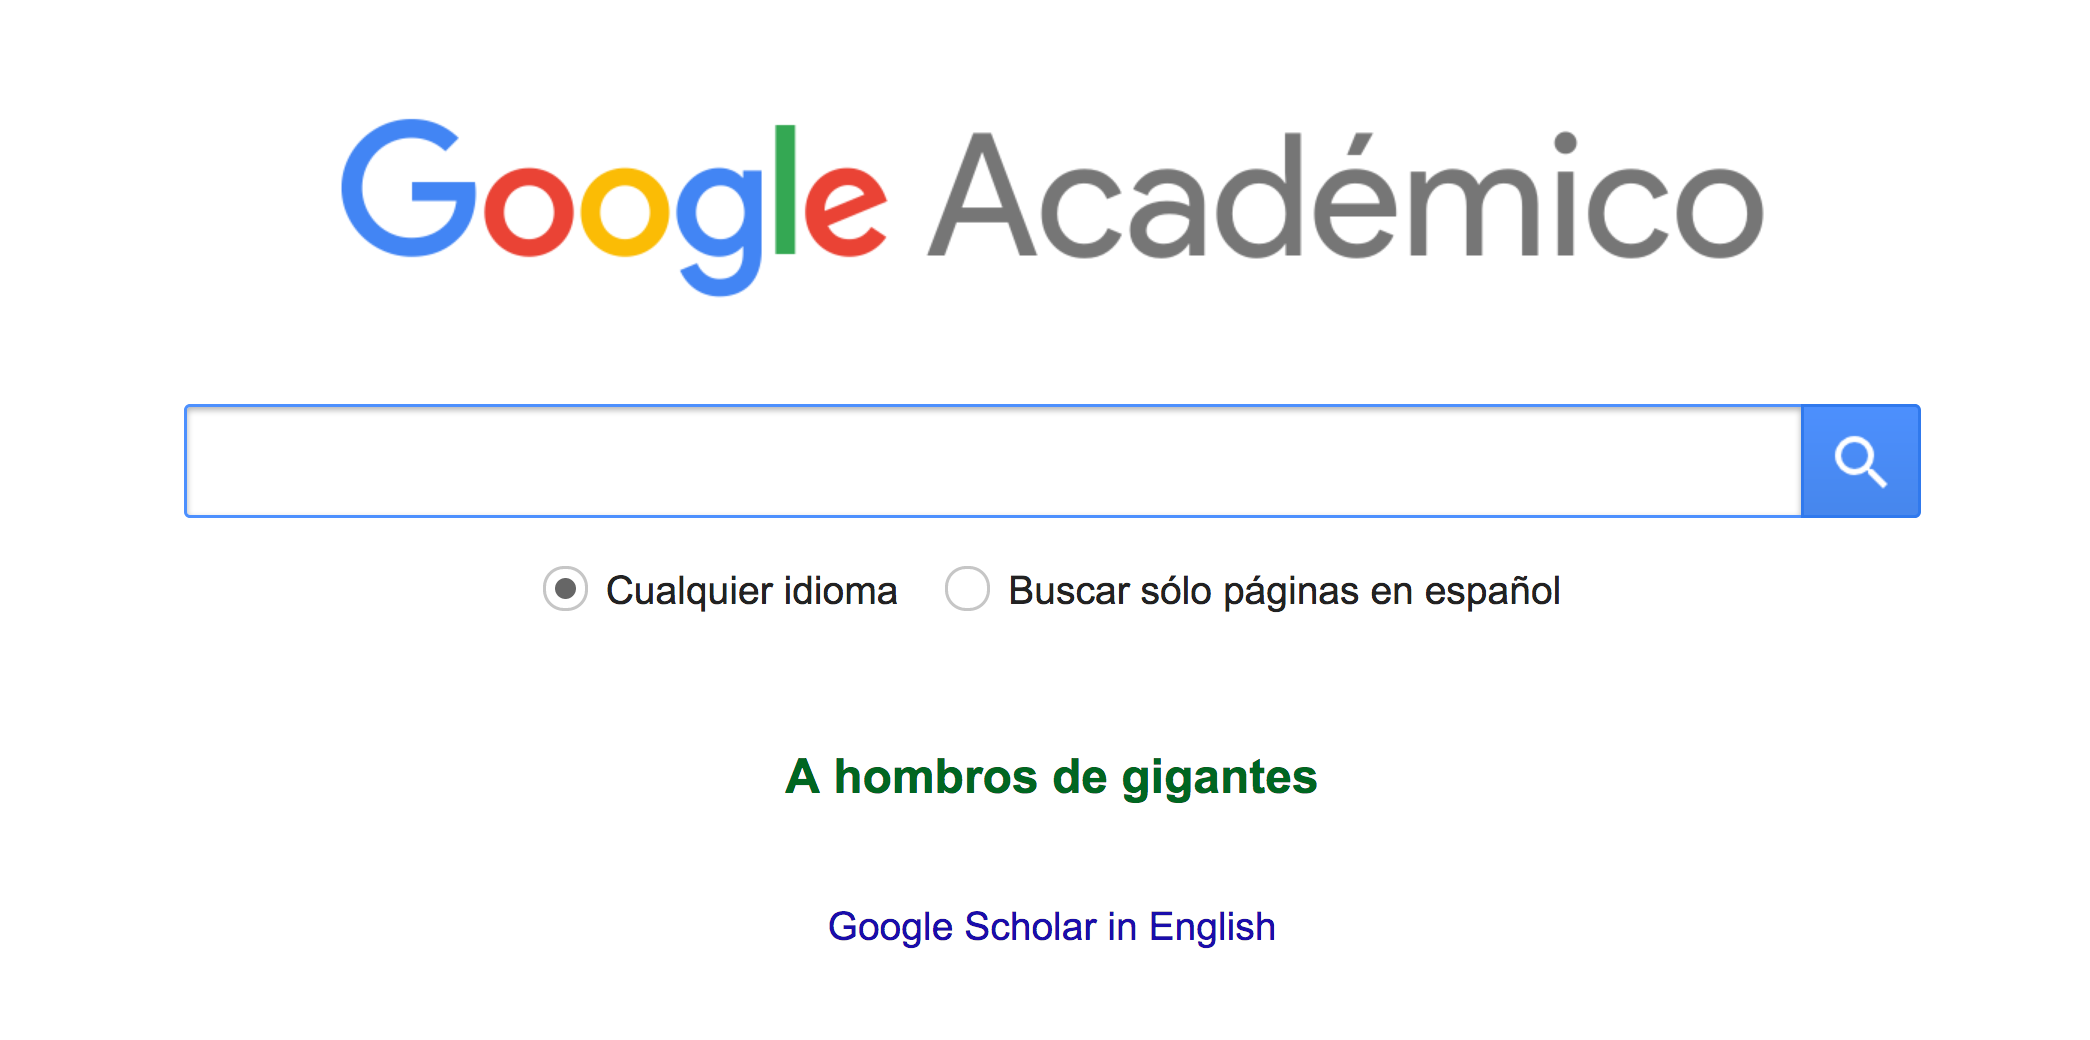 Figura 19. Logo de Google Académico